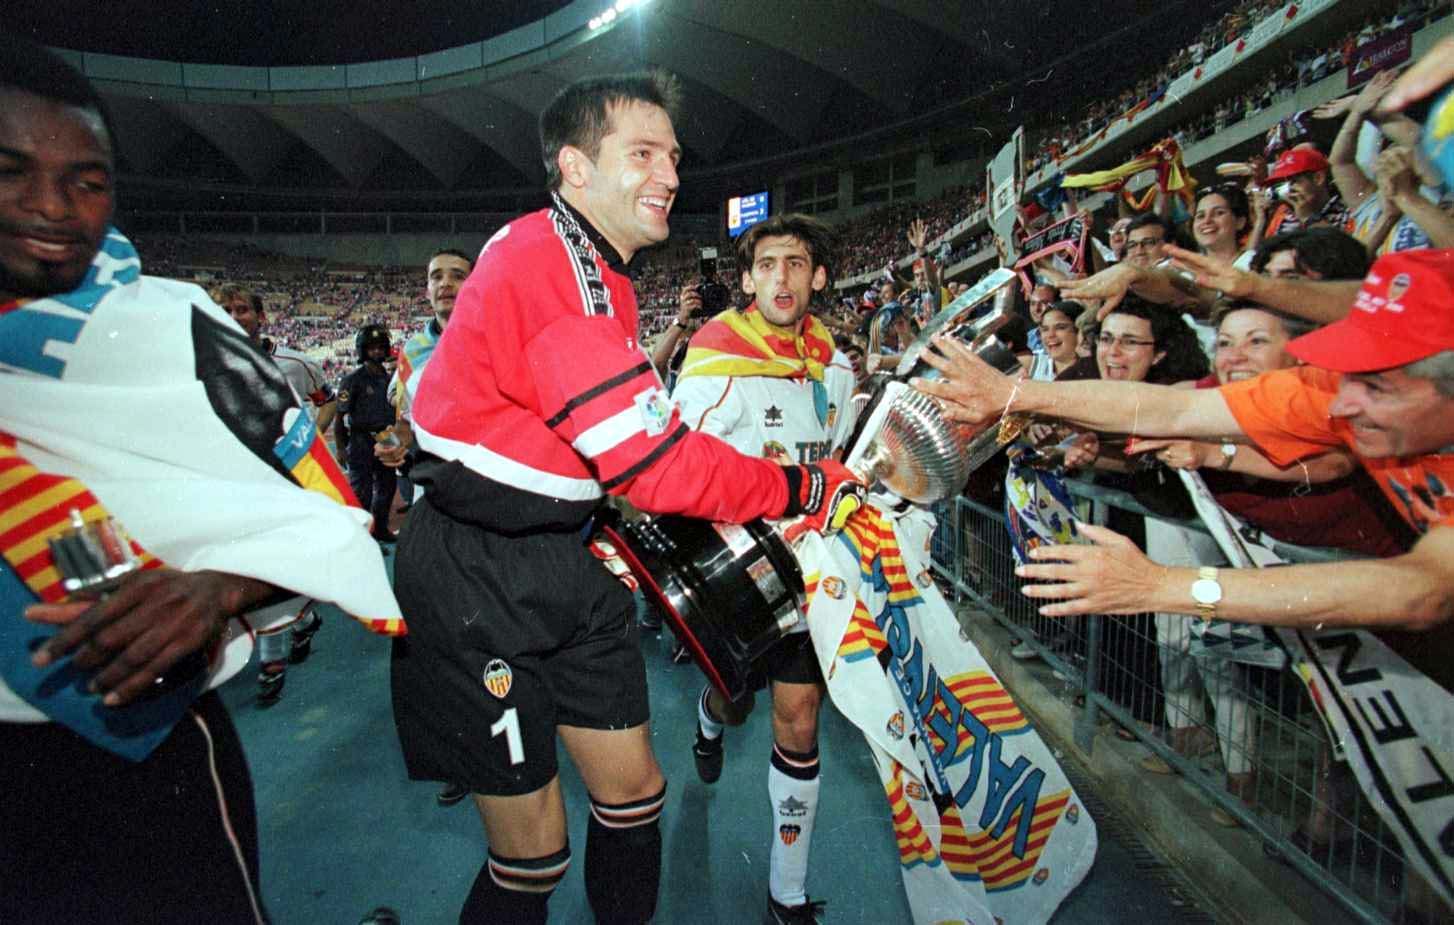 Hoy hace 24 años que el Valencia conquistó la copa del Rey en La Cartuja